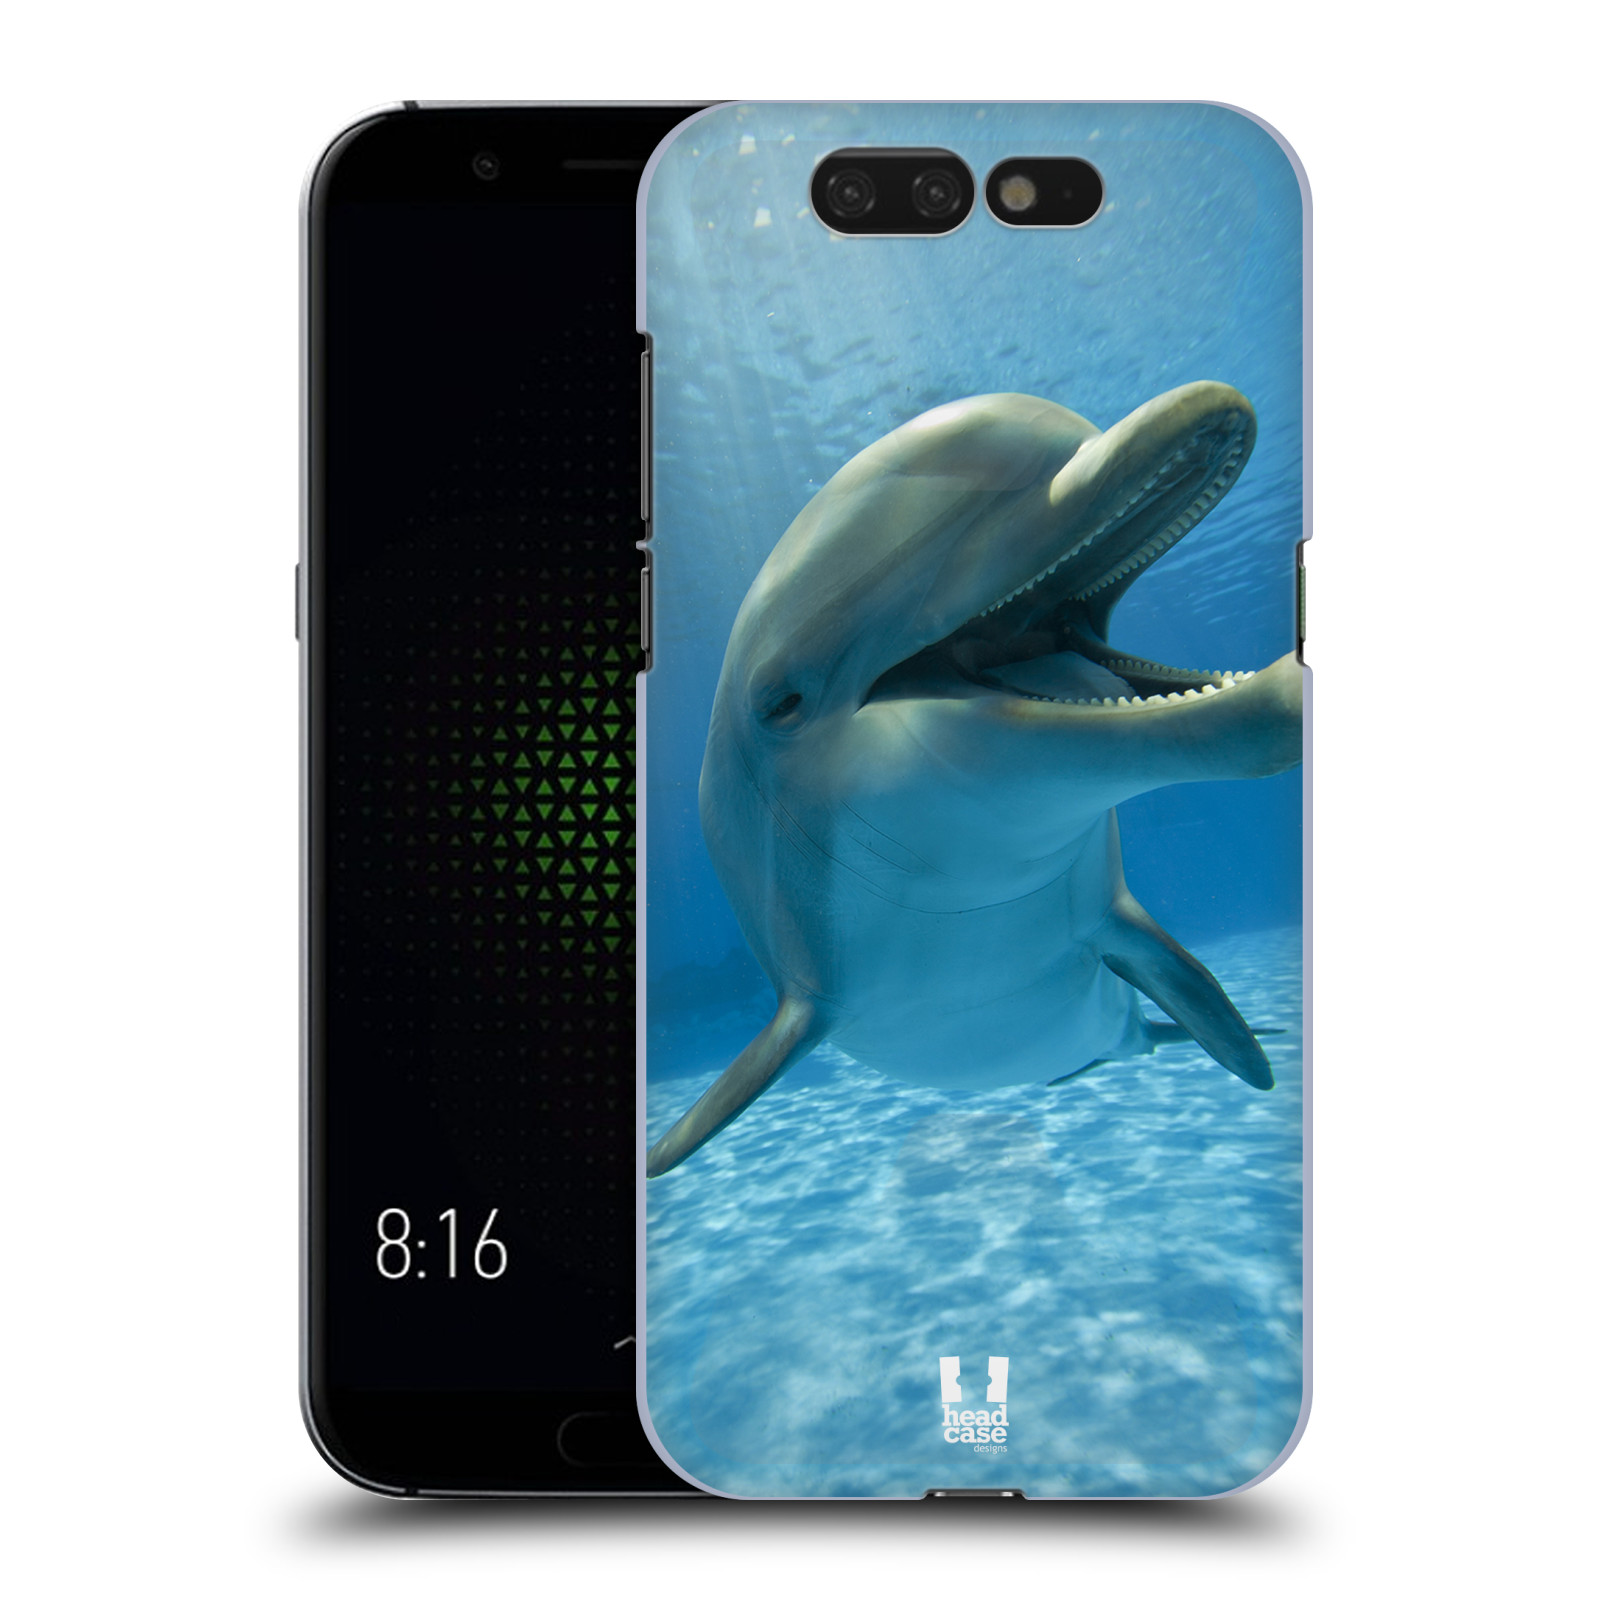 Zadní obal pro mobil Xiaomi Black Shark - HEAD CASE - Svět zvířat delfín v moři